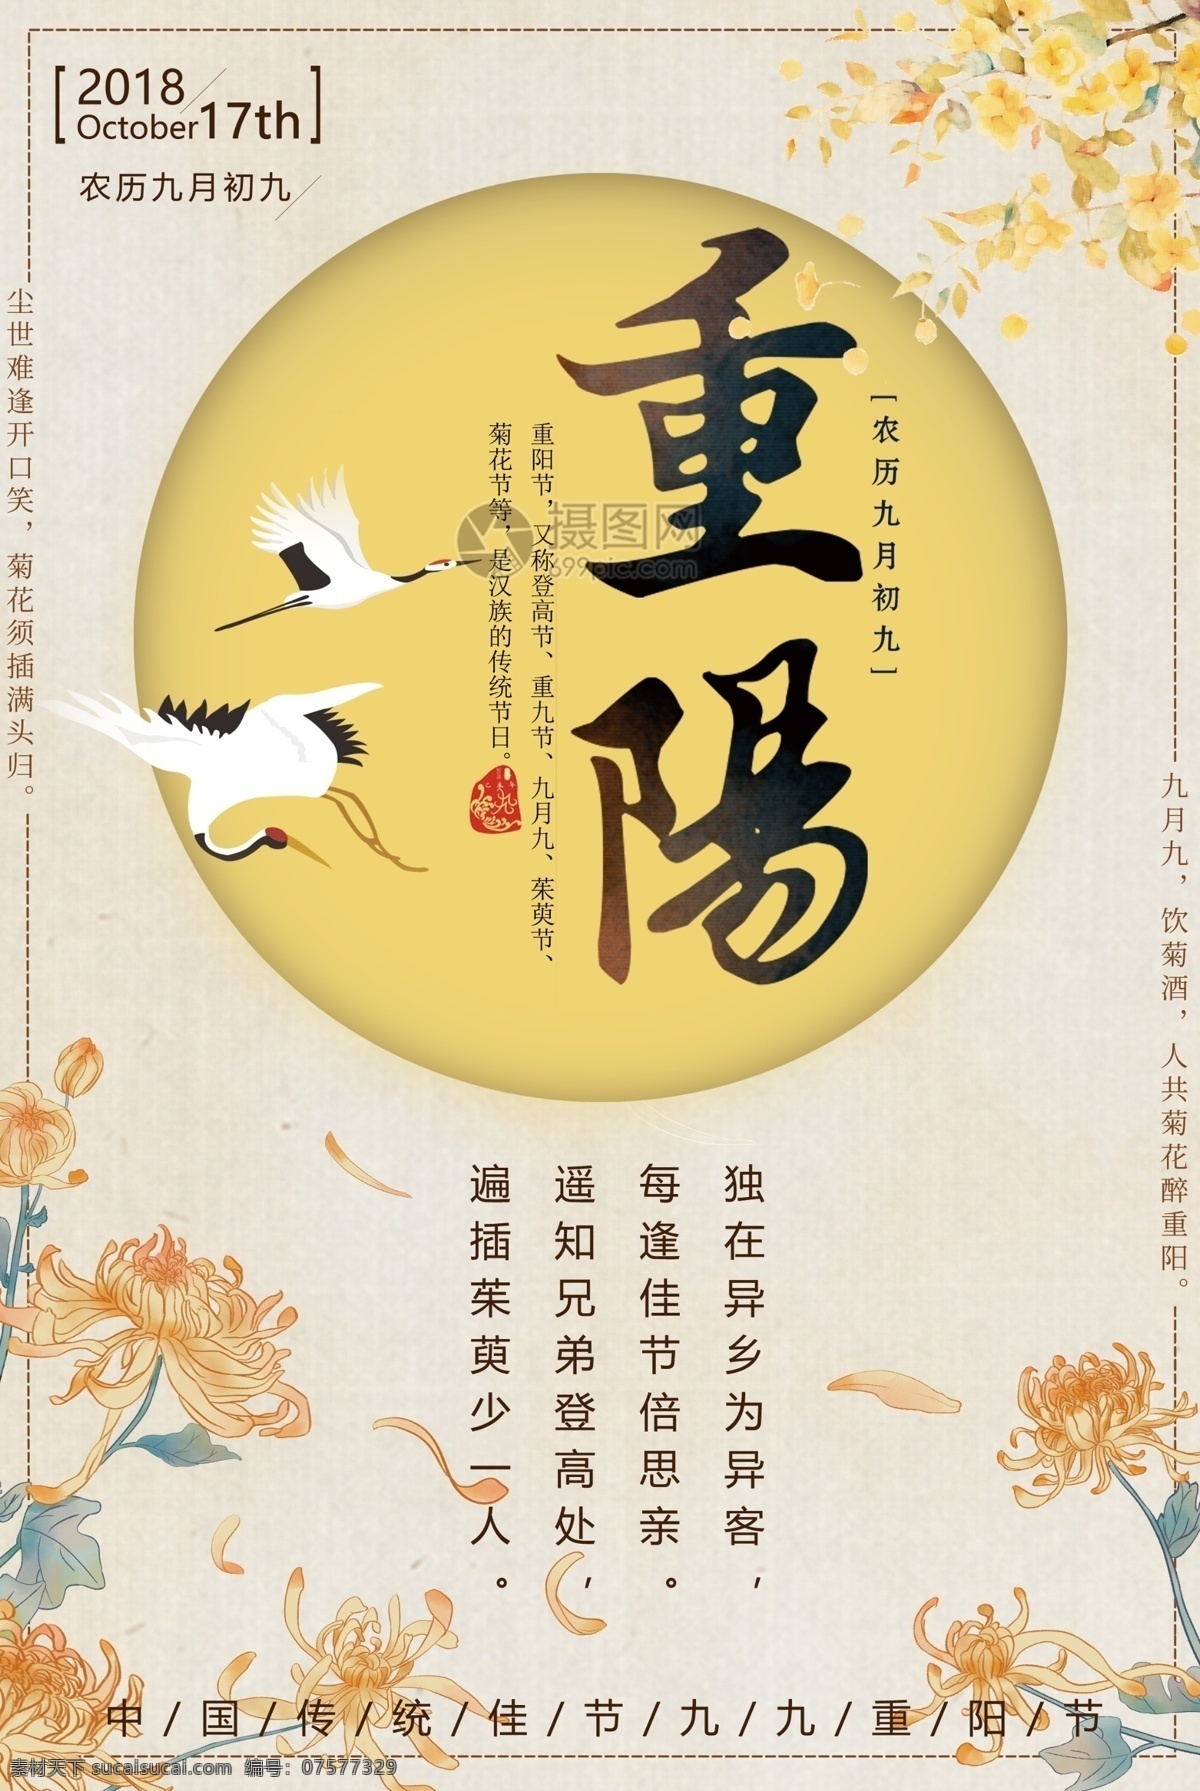 中国 传统节日 重阳节 海报 传统 节日 节庆 九月初九 尊老 敬老 孝敬父母